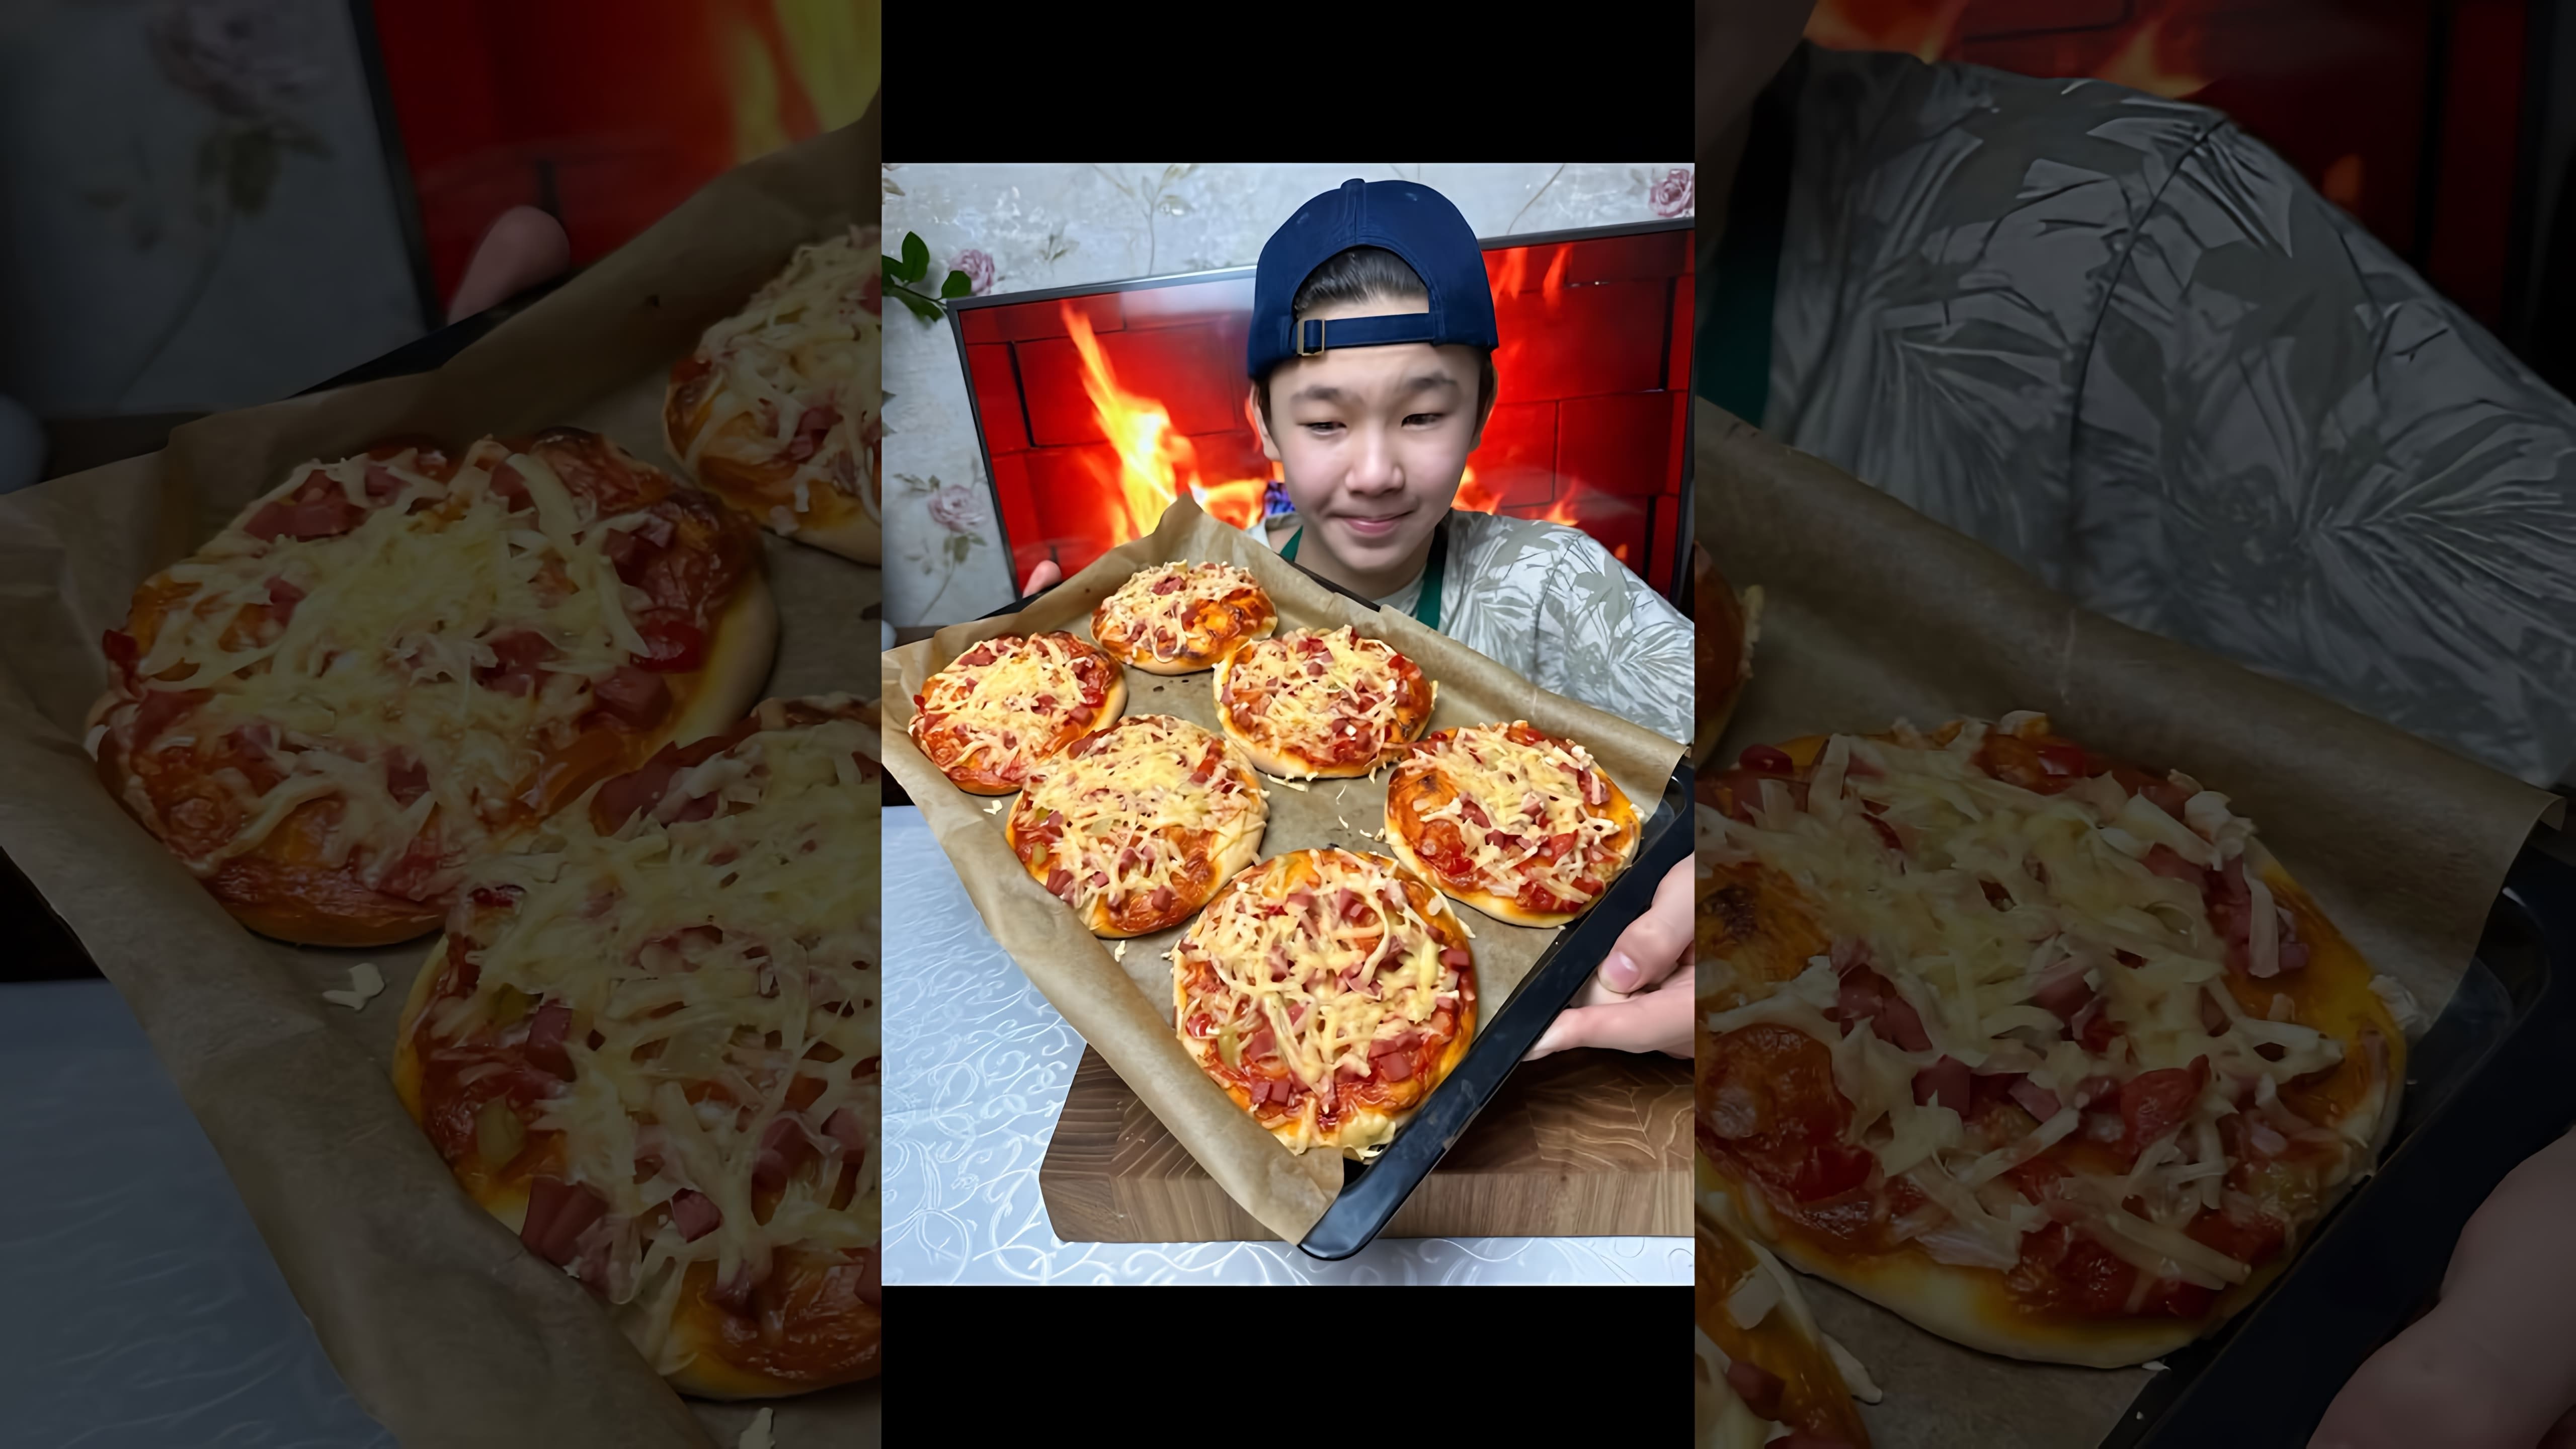 В этом видео демонстрируется процесс приготовления мини-пицц, которые напоминают пиццы из школьной столовой